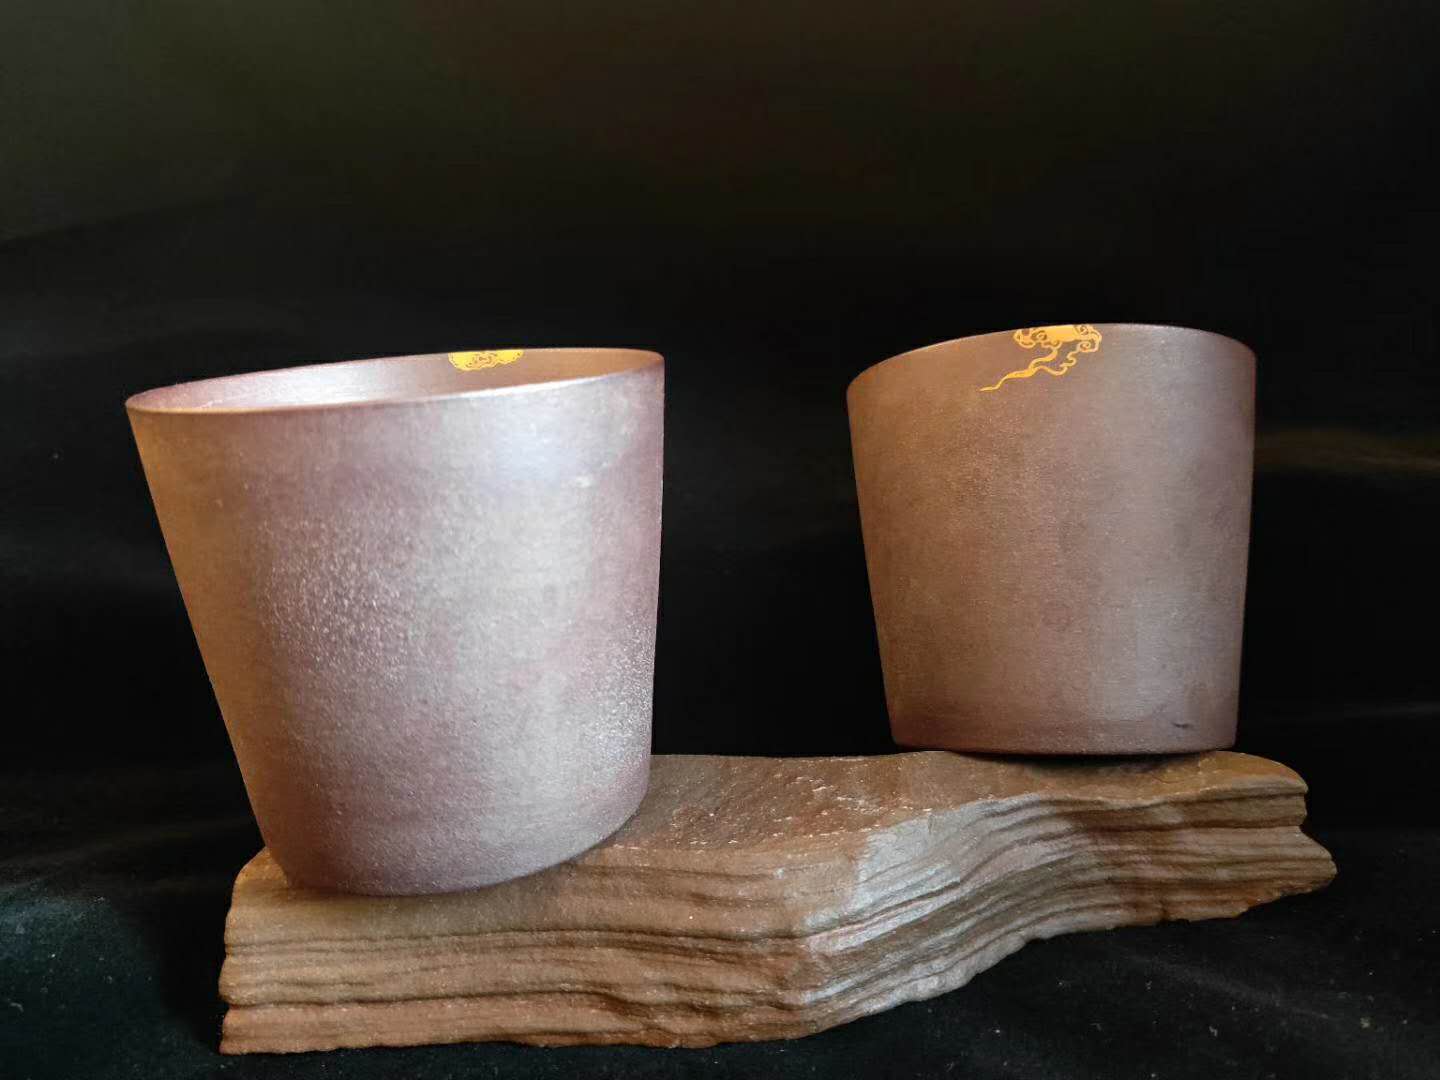 南京紫砂壶修复技术紫砂壶的几种修复方法厂家 南京美瓷工艺品有限公司